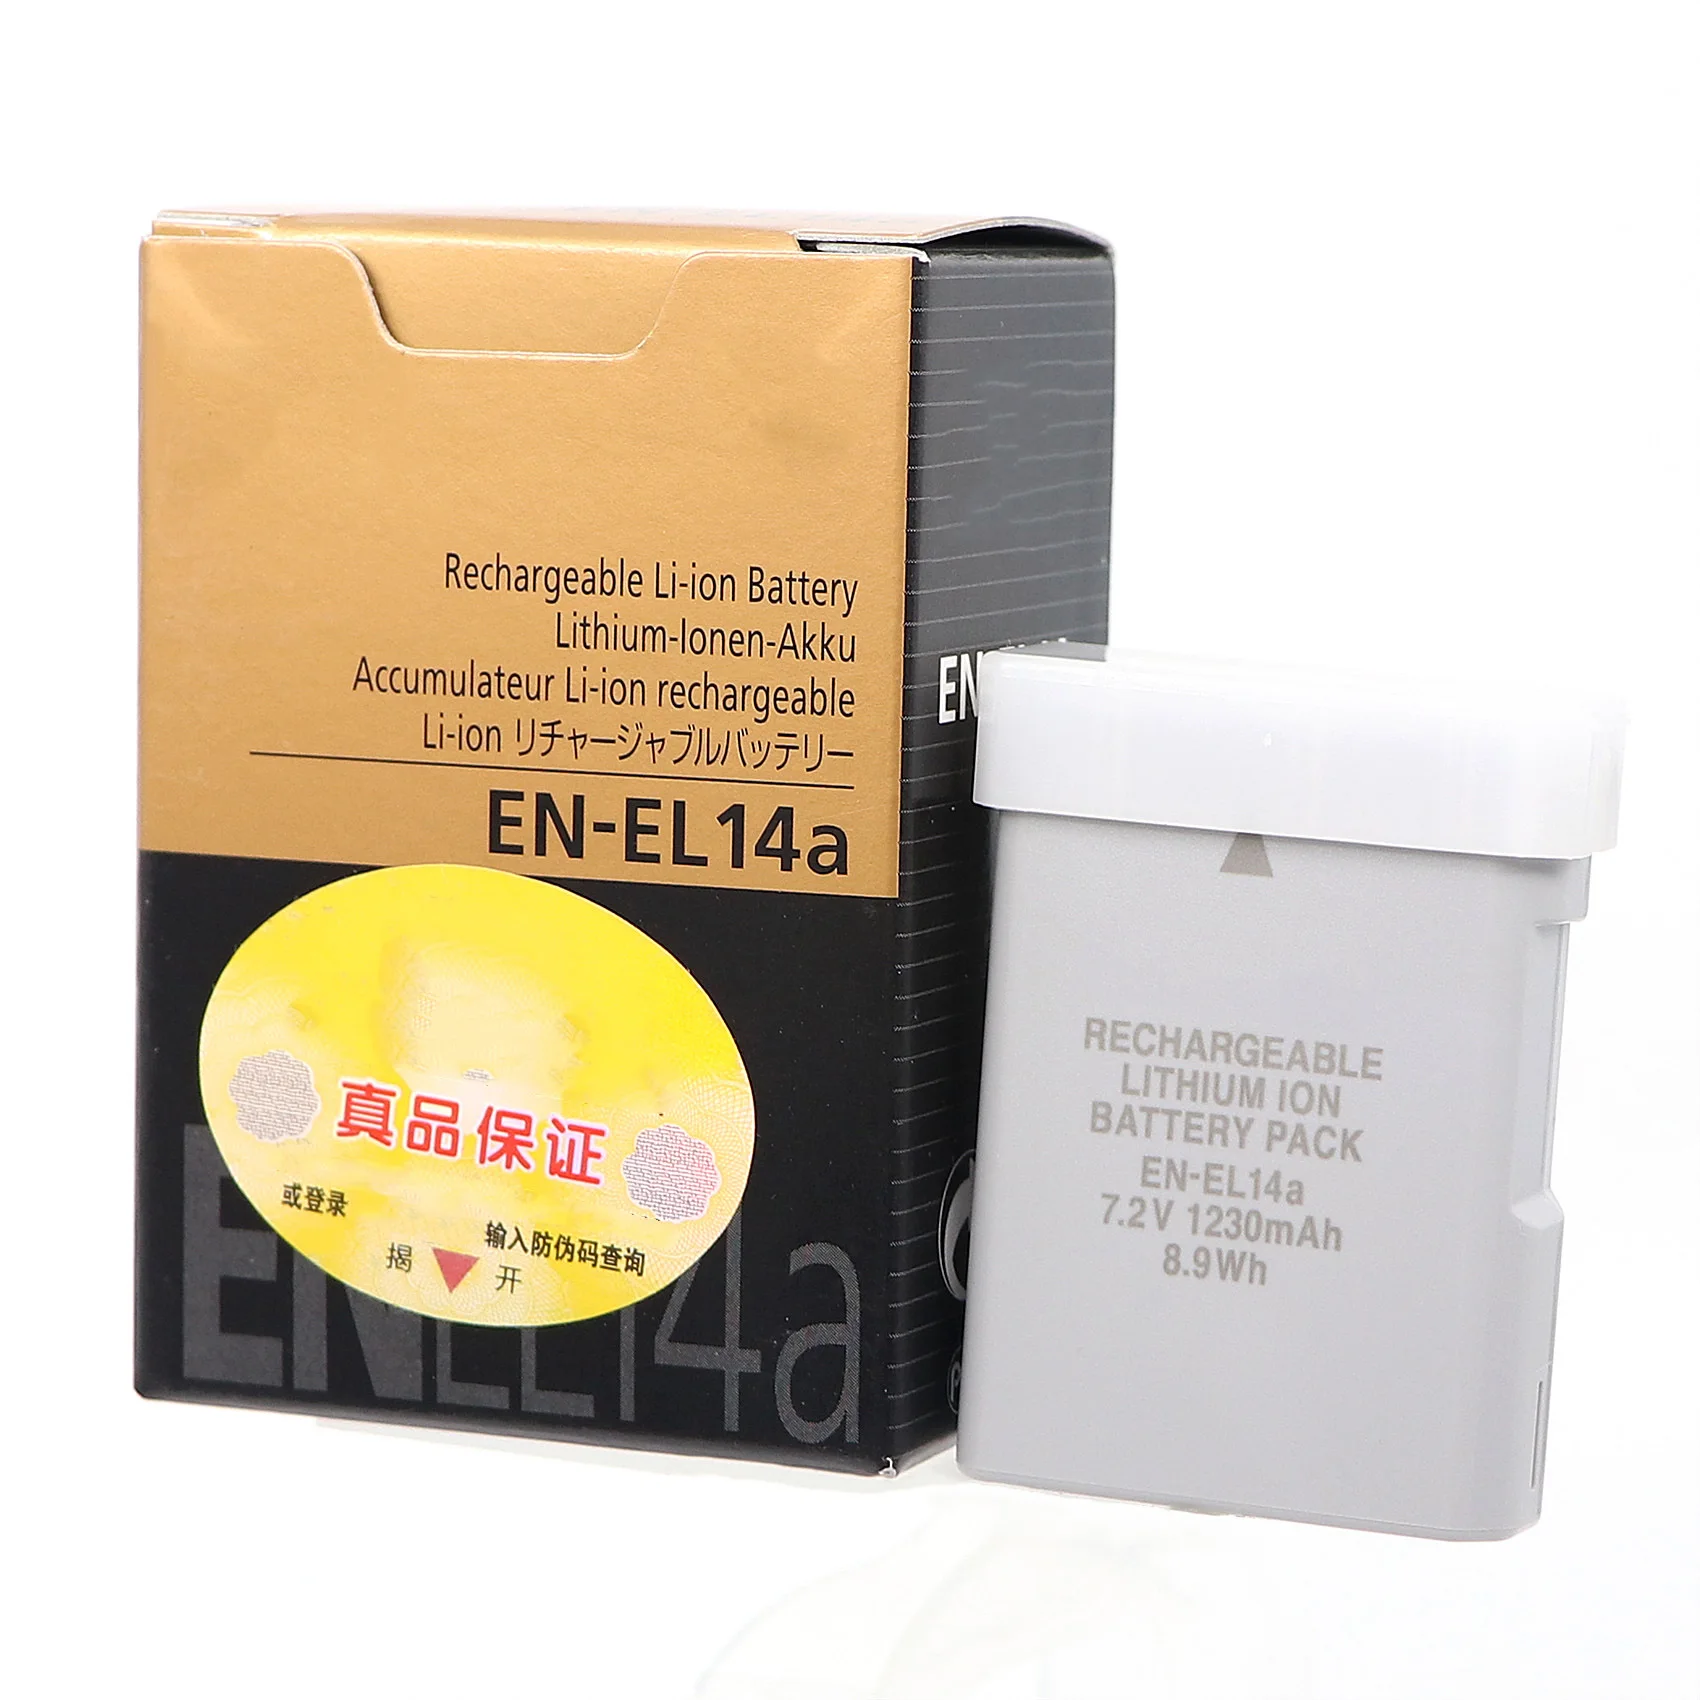 

EN-EL14A ENEL14 EN EL14A 7.2V 1230mAh Camera Battery For Nikon D5500 D5300 D5600 D3200 D3300 D5100 P7800 P7700 P7100 P7000 MH-24